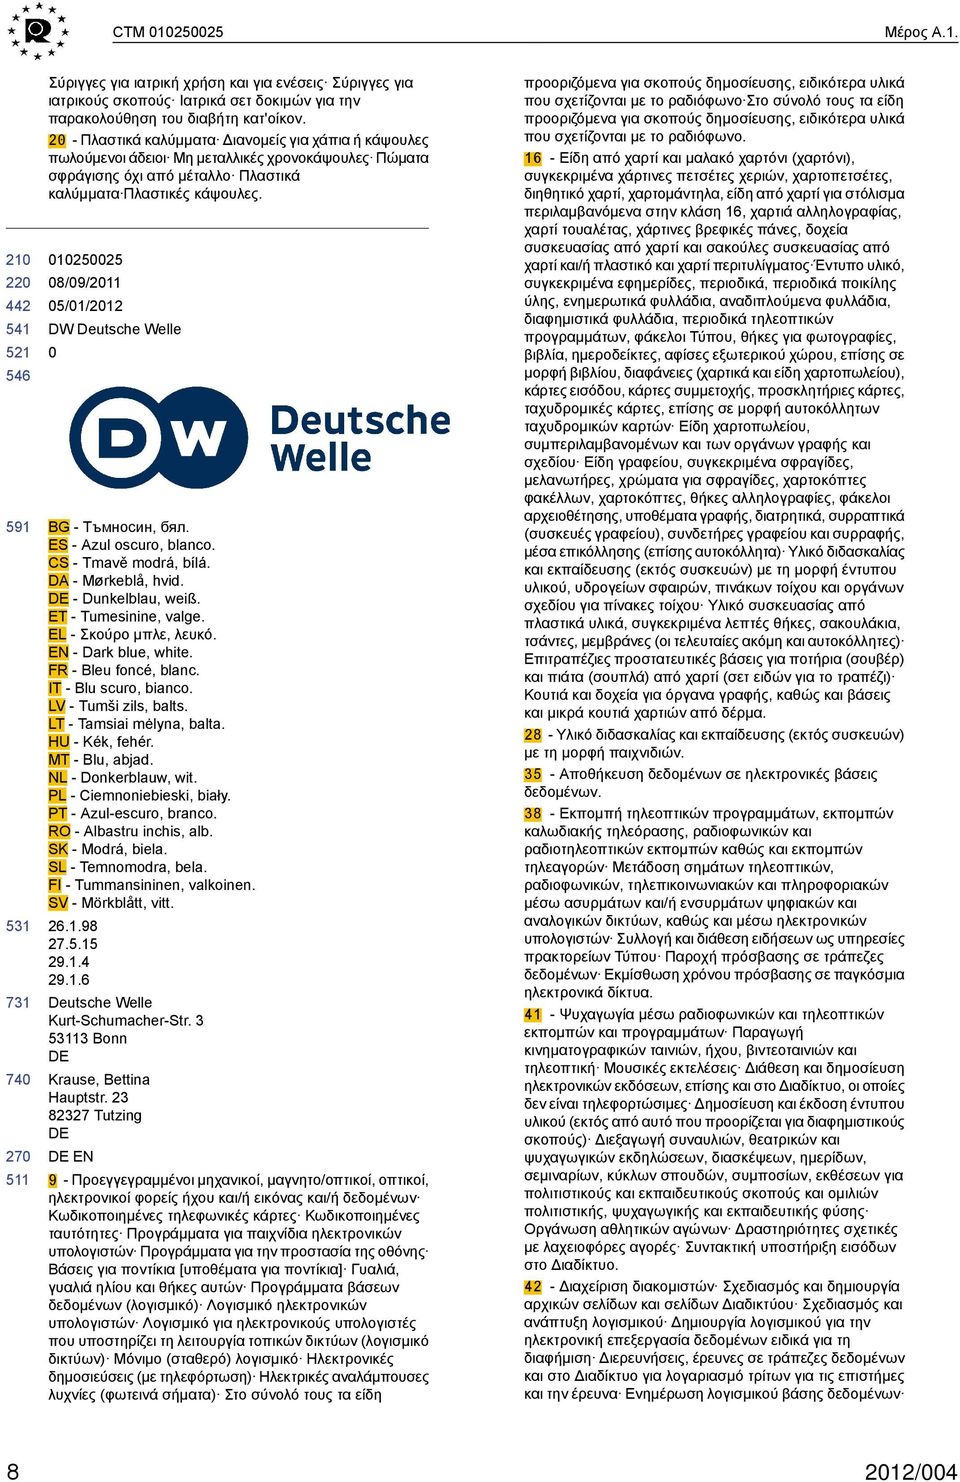 12525 8/9/211 DW Deutsche Welle BG - Тъмносин, бял. ES - Azul oscuro, blanco. CS - Tmavě modrá, bílá. DA - Mørkeblå, hvid. - Dunkelblau, weiß. ET - Tumesinine, valge. EL - Σκούρο μπλε, λευκό.